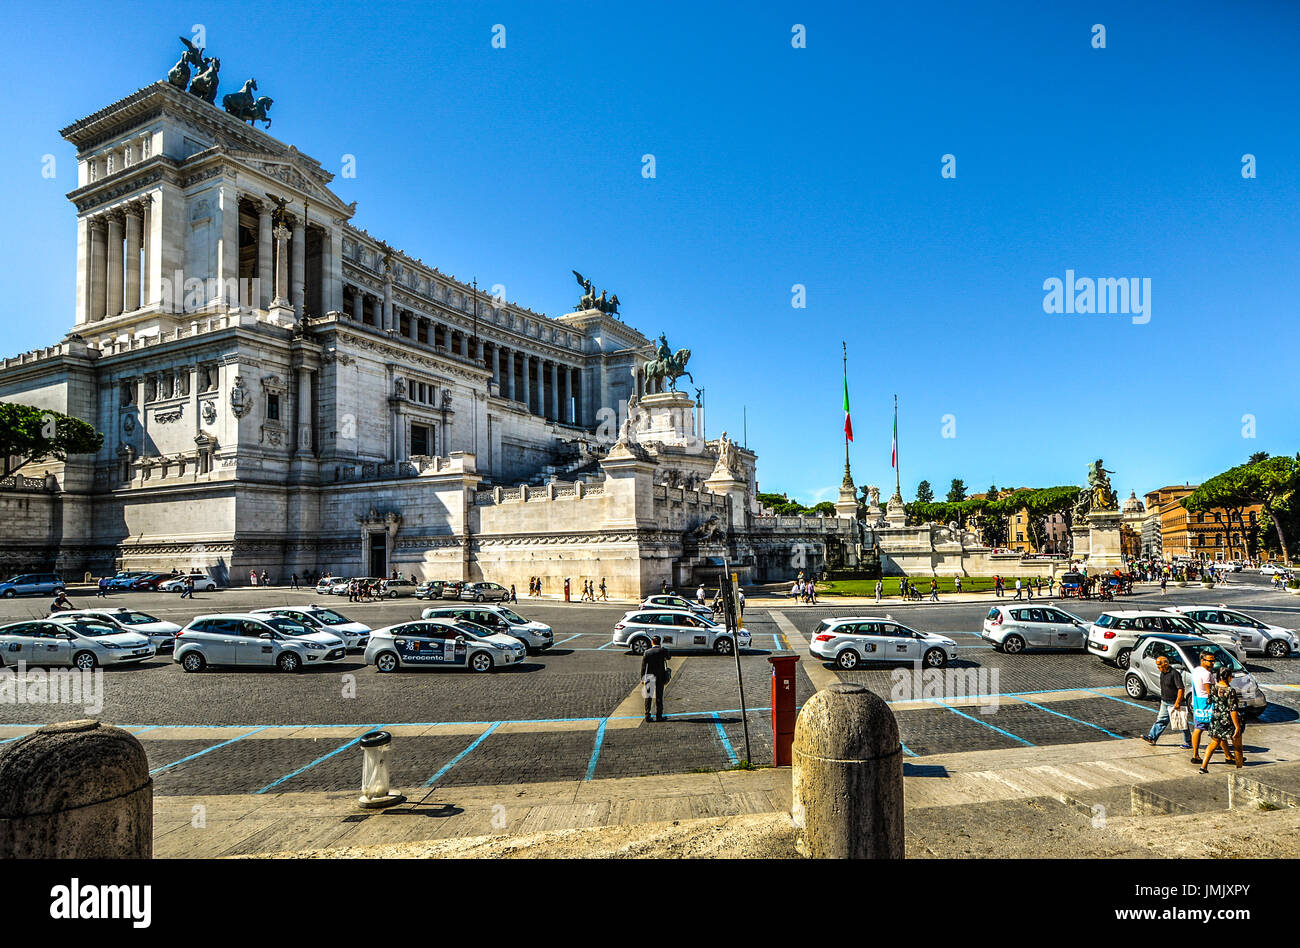 Une ligne d'un grand nombre de taxis blancs pour voitures attend à côté du monument à Victor Emmanuel la Piazza Venezia à Rome Italie Banque D'Images